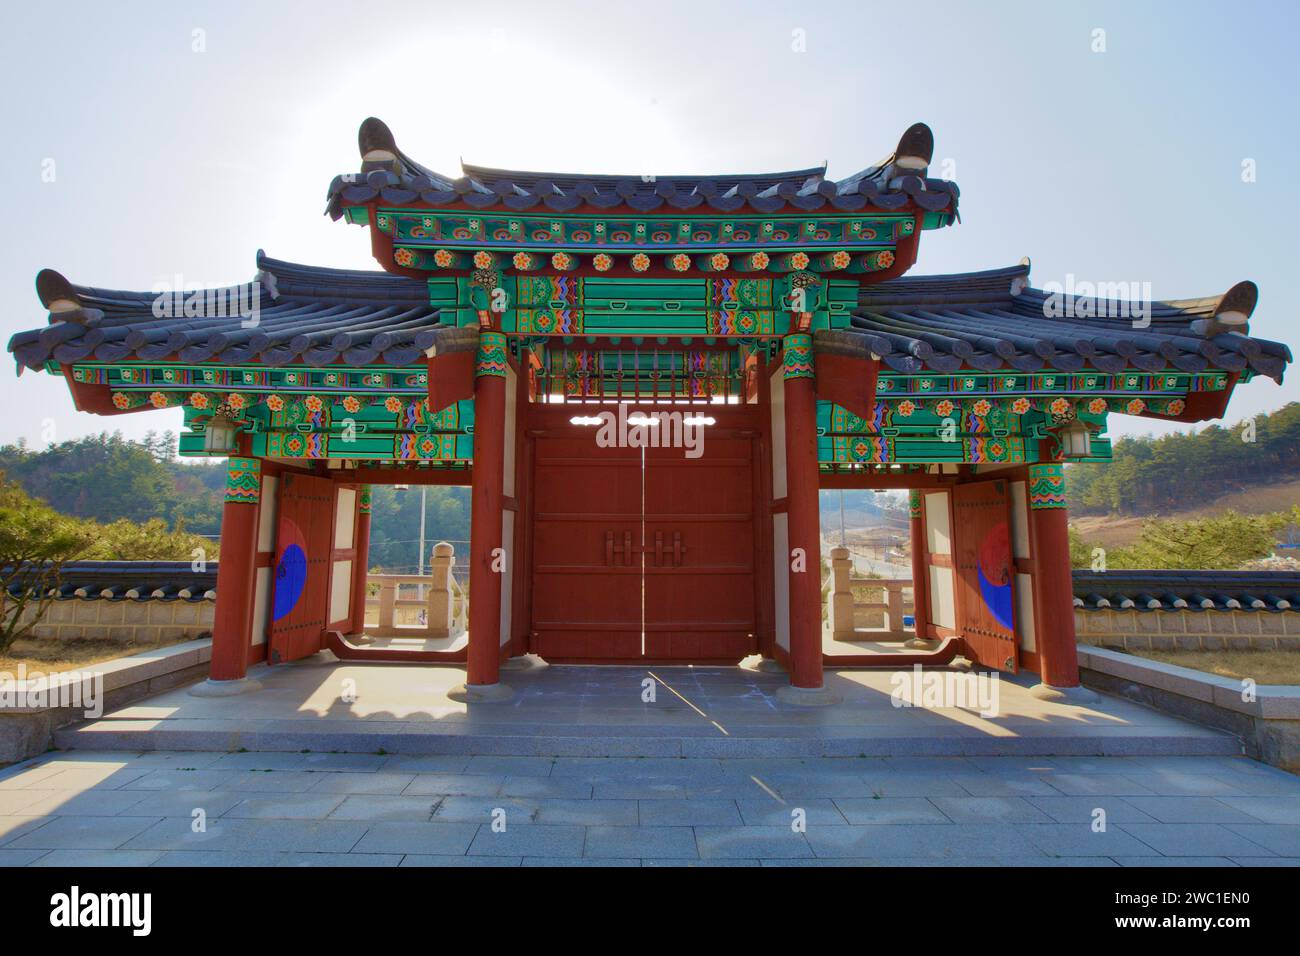 Ville de Sangju, Corée du Sud - 9 mars 2017 : la vue inversée de la porte traditionnelle de la salle rituelle près du musée de Sangju révèle son dynamisme et ses couleurs Banque D'Images